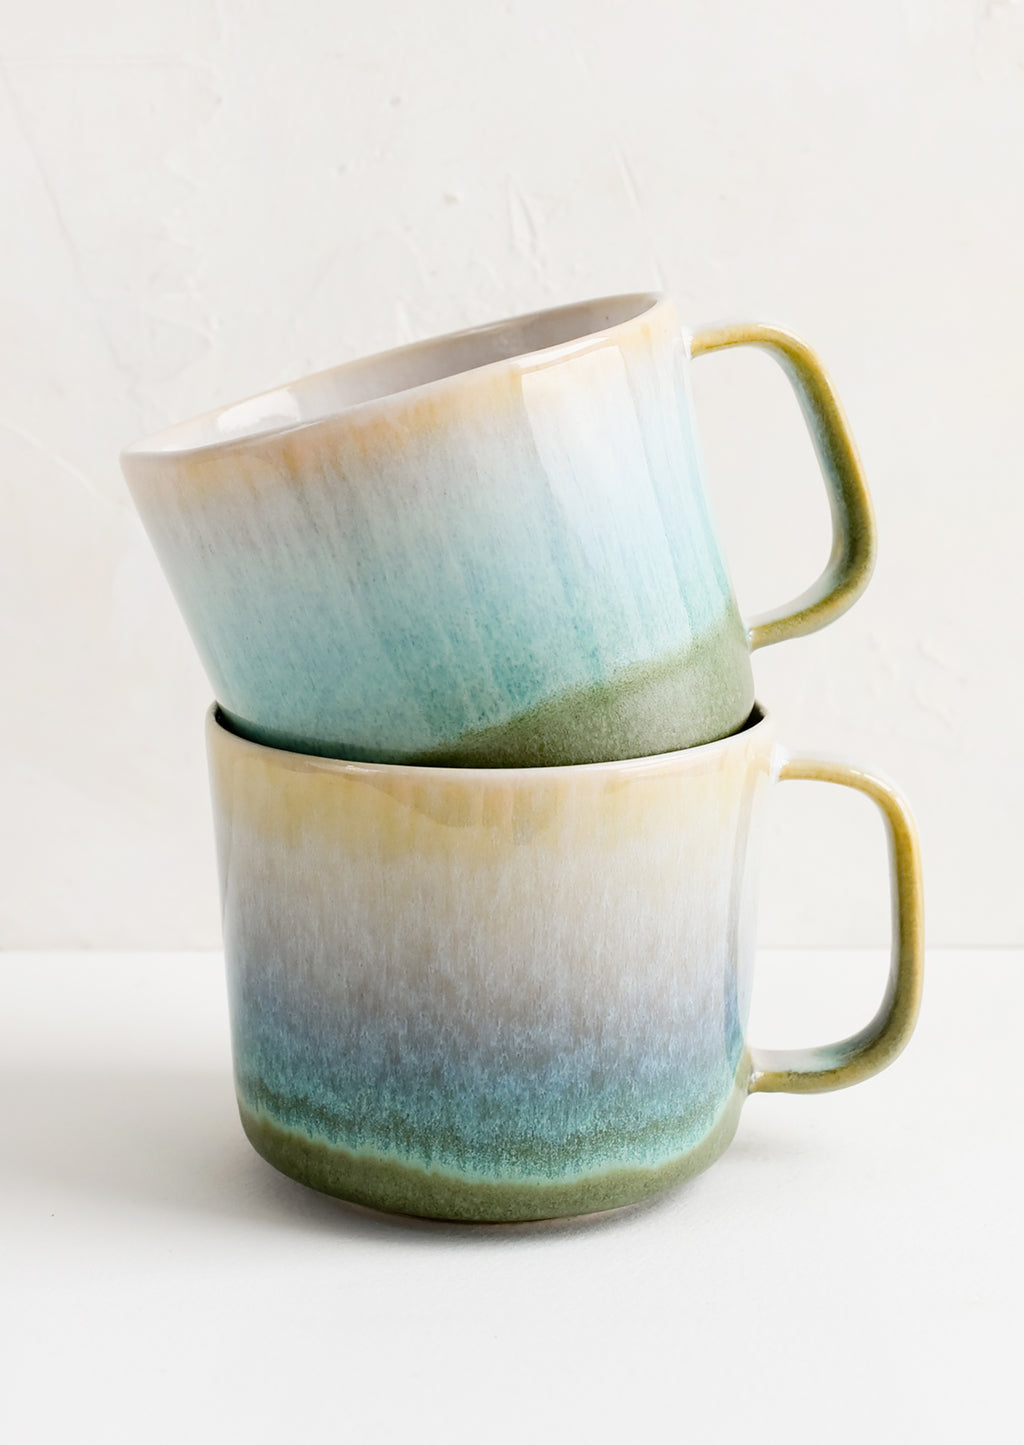 5: Two stacked ceramic mugs.